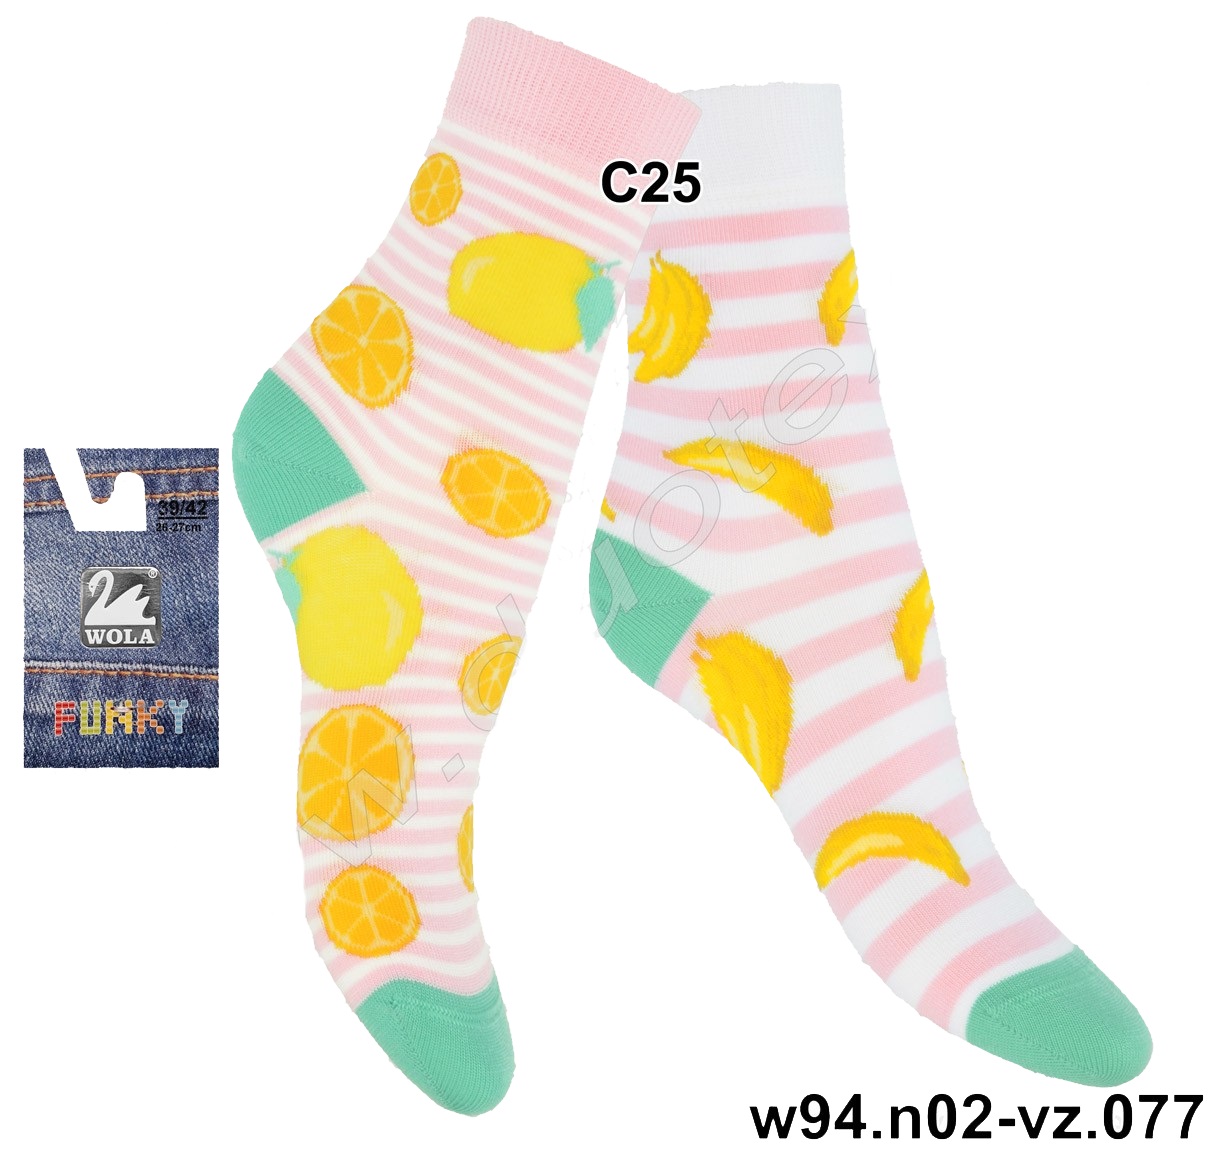 Veselé vzorované ponožky w94.N02 - 077